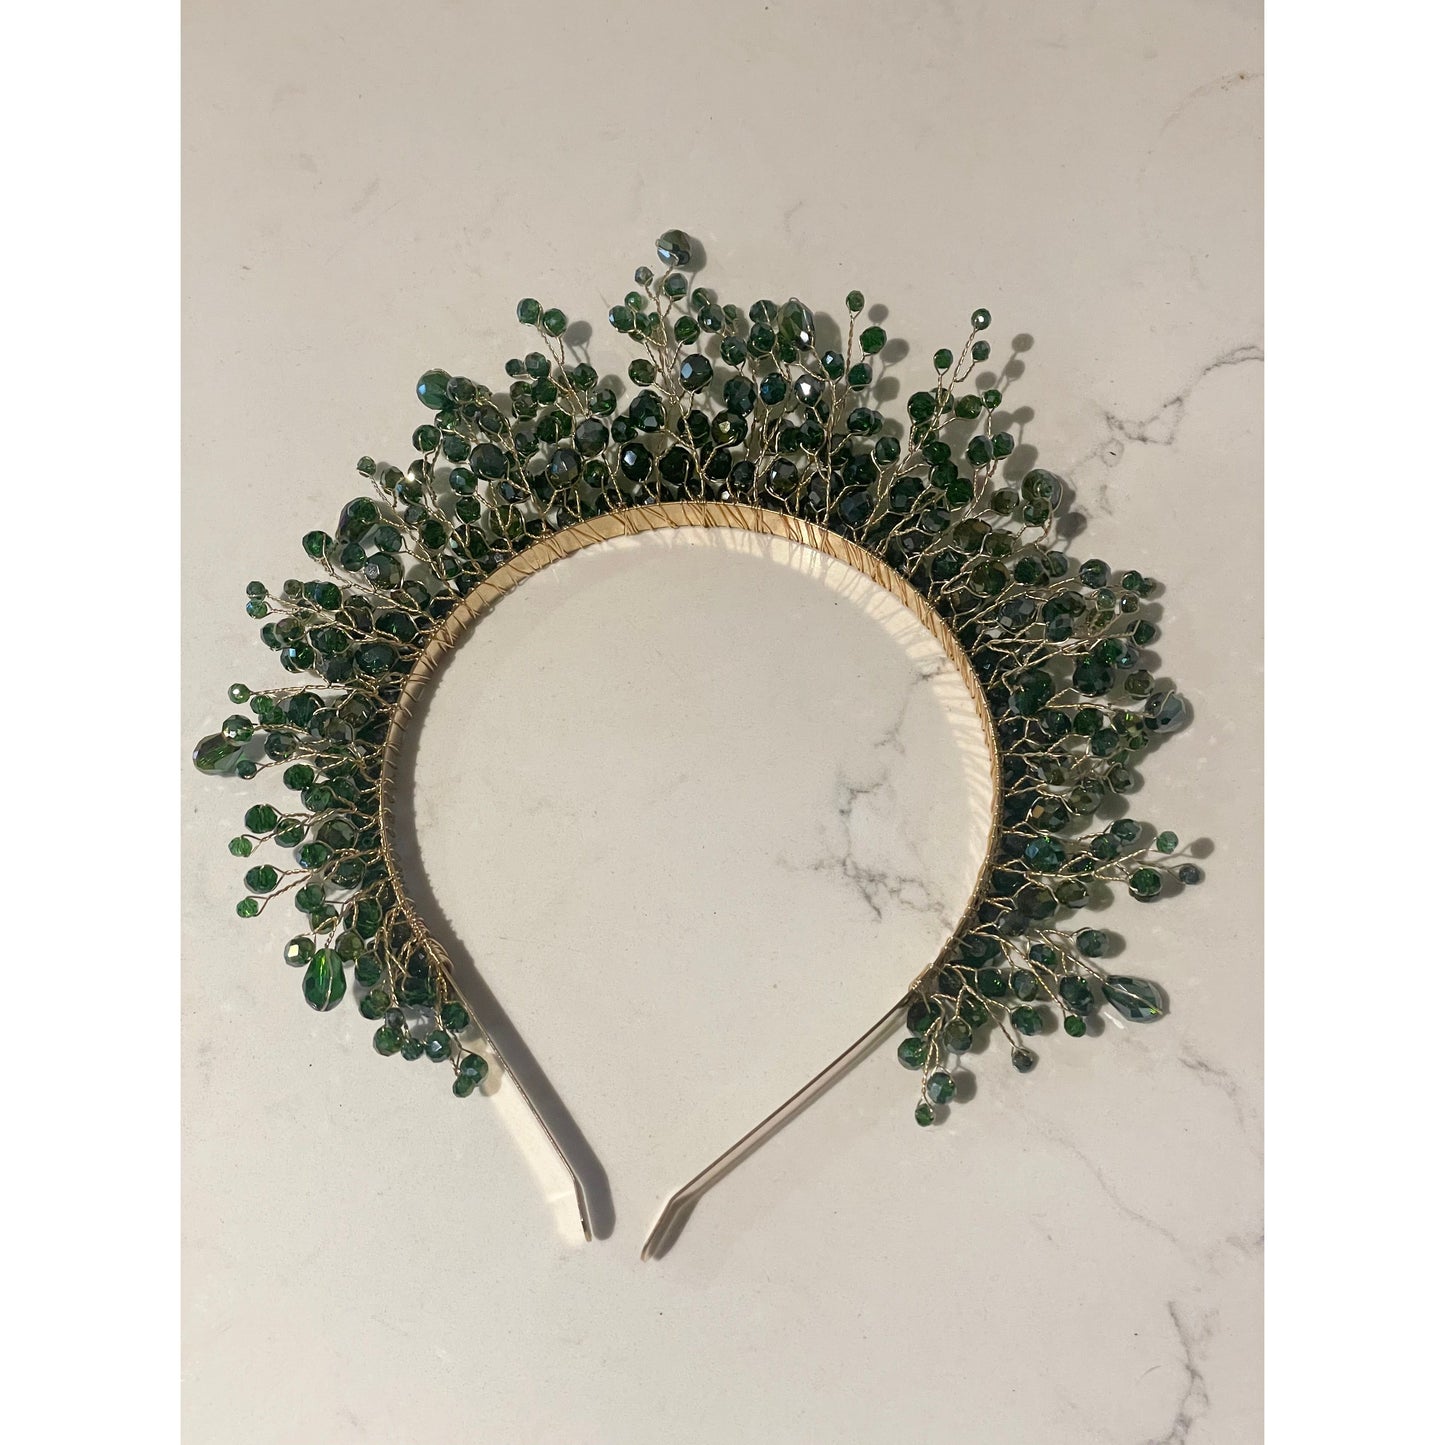 Emerald green beaded headband